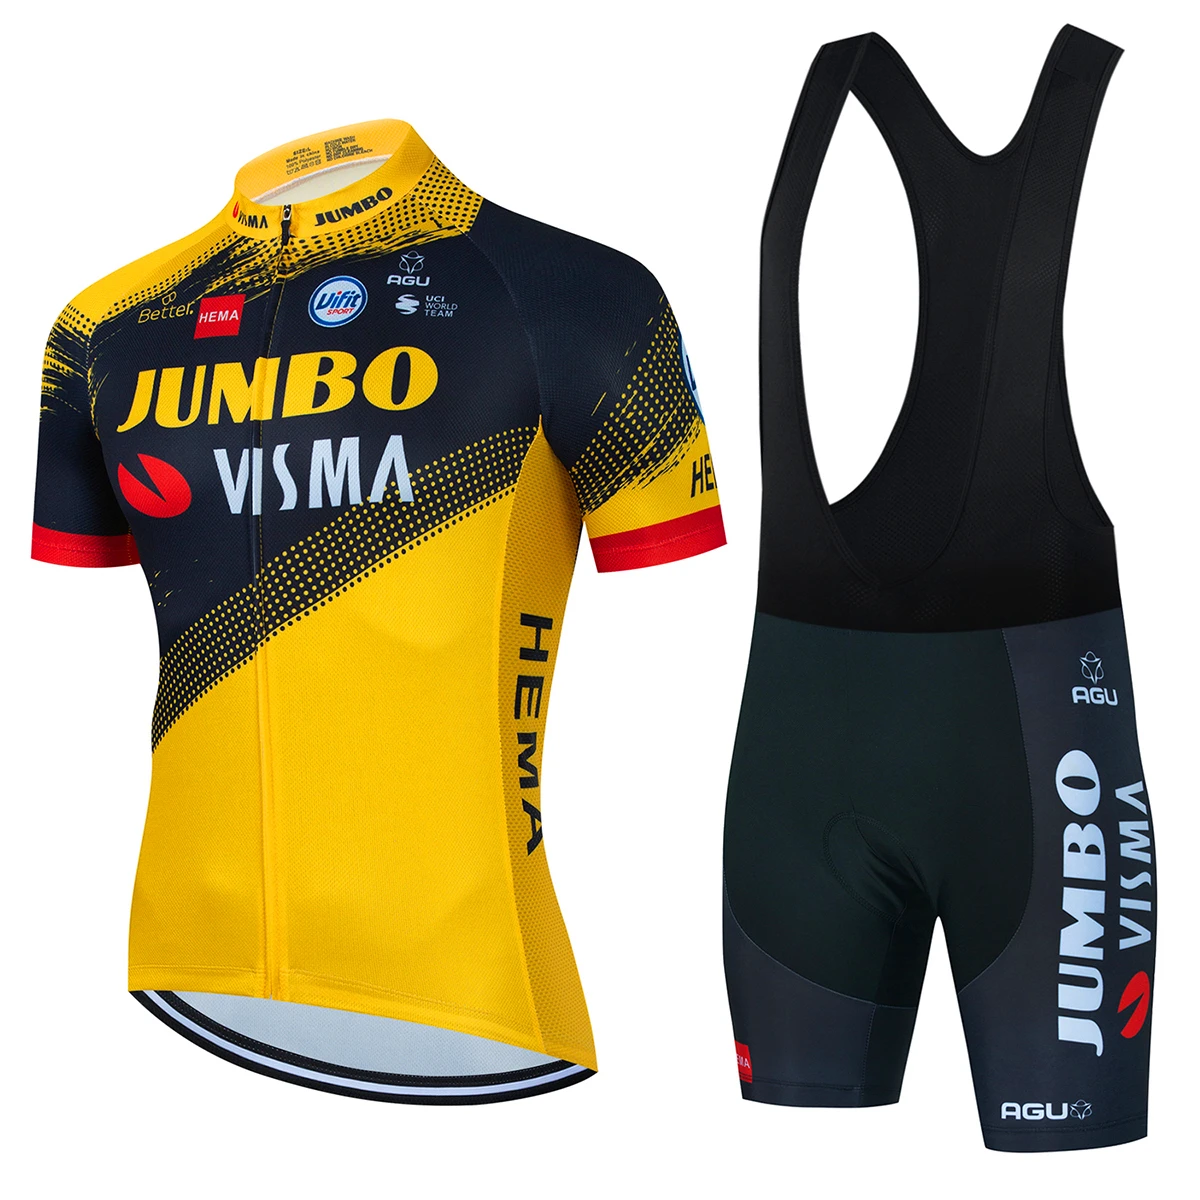 

Комплект одежды для велоспорта JUMBO VISMA, Мужская одежда для велоспорта, рубашка для шоссейного велосипеда, велосипедные шорты, одежда для горного велосипеда, 2022